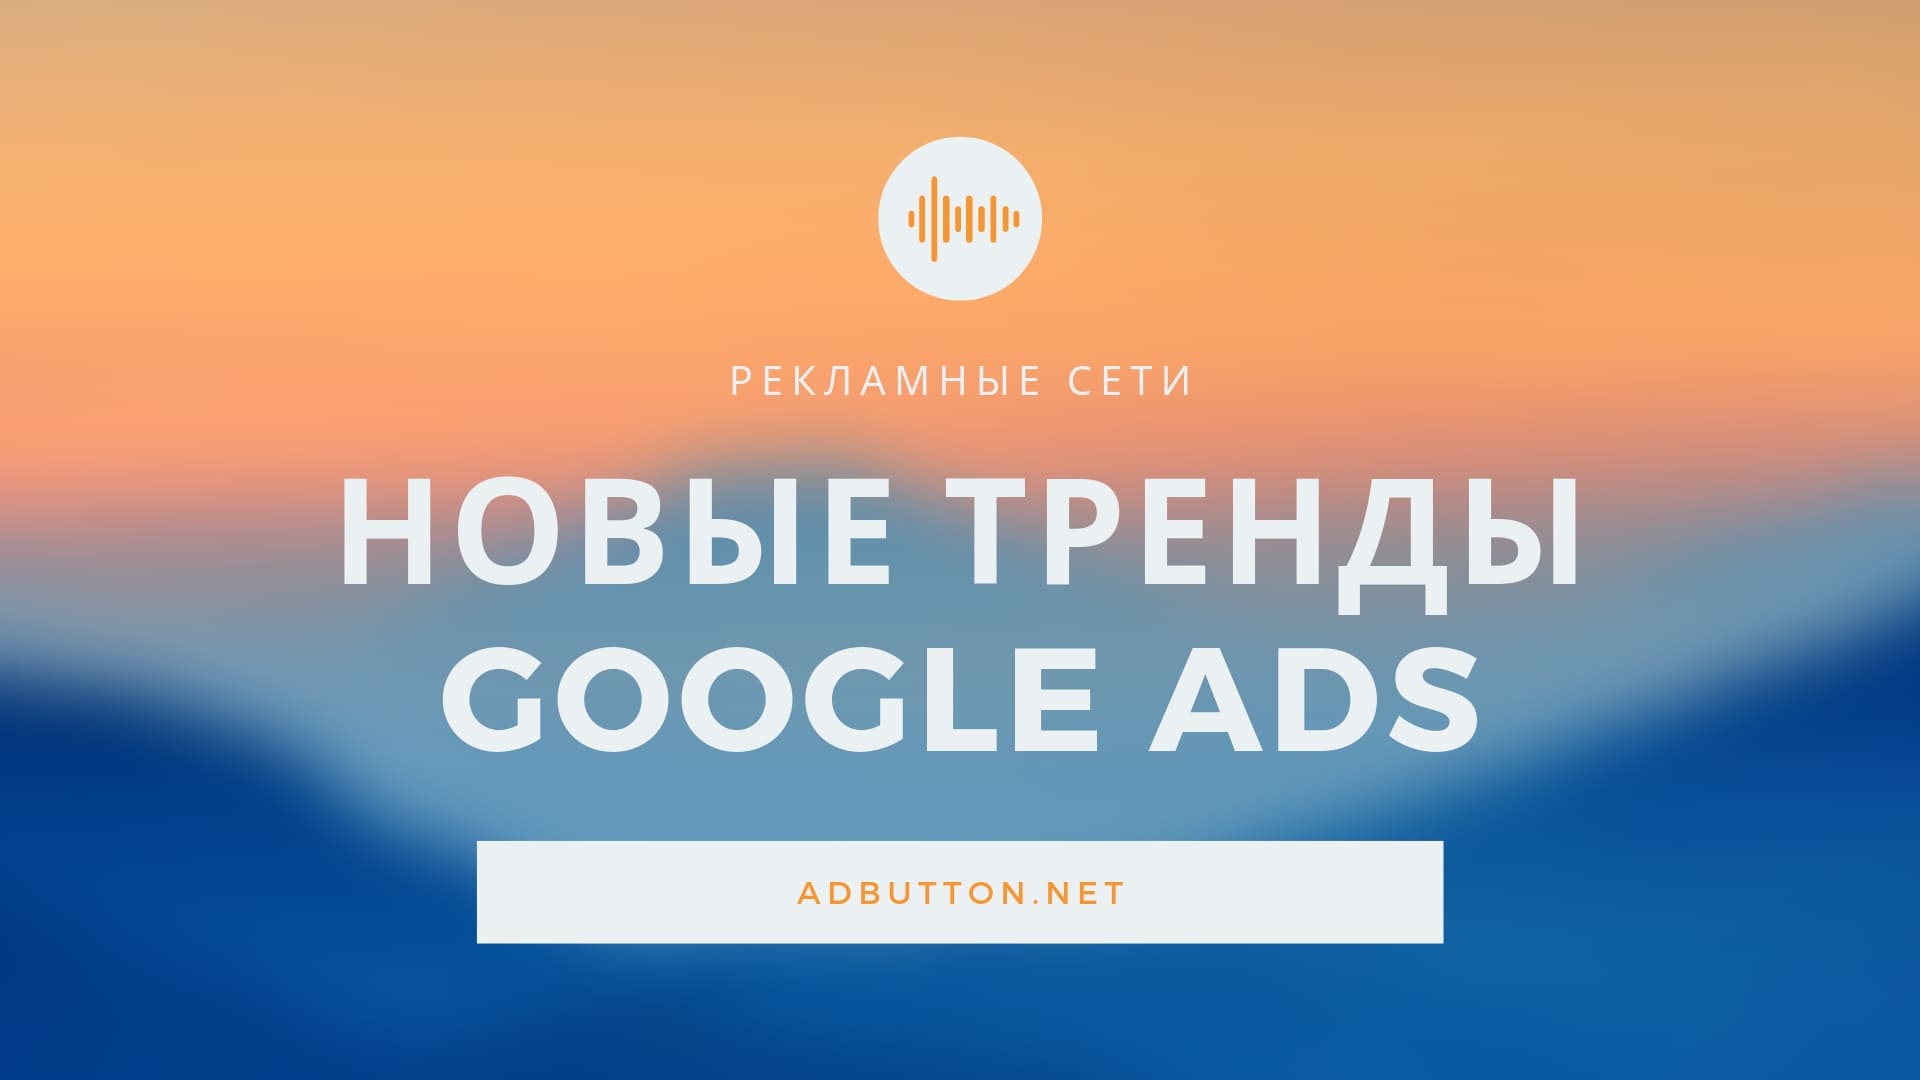 Новинки и тенденции развития контекстной рекламы Google Ads в 2019 году